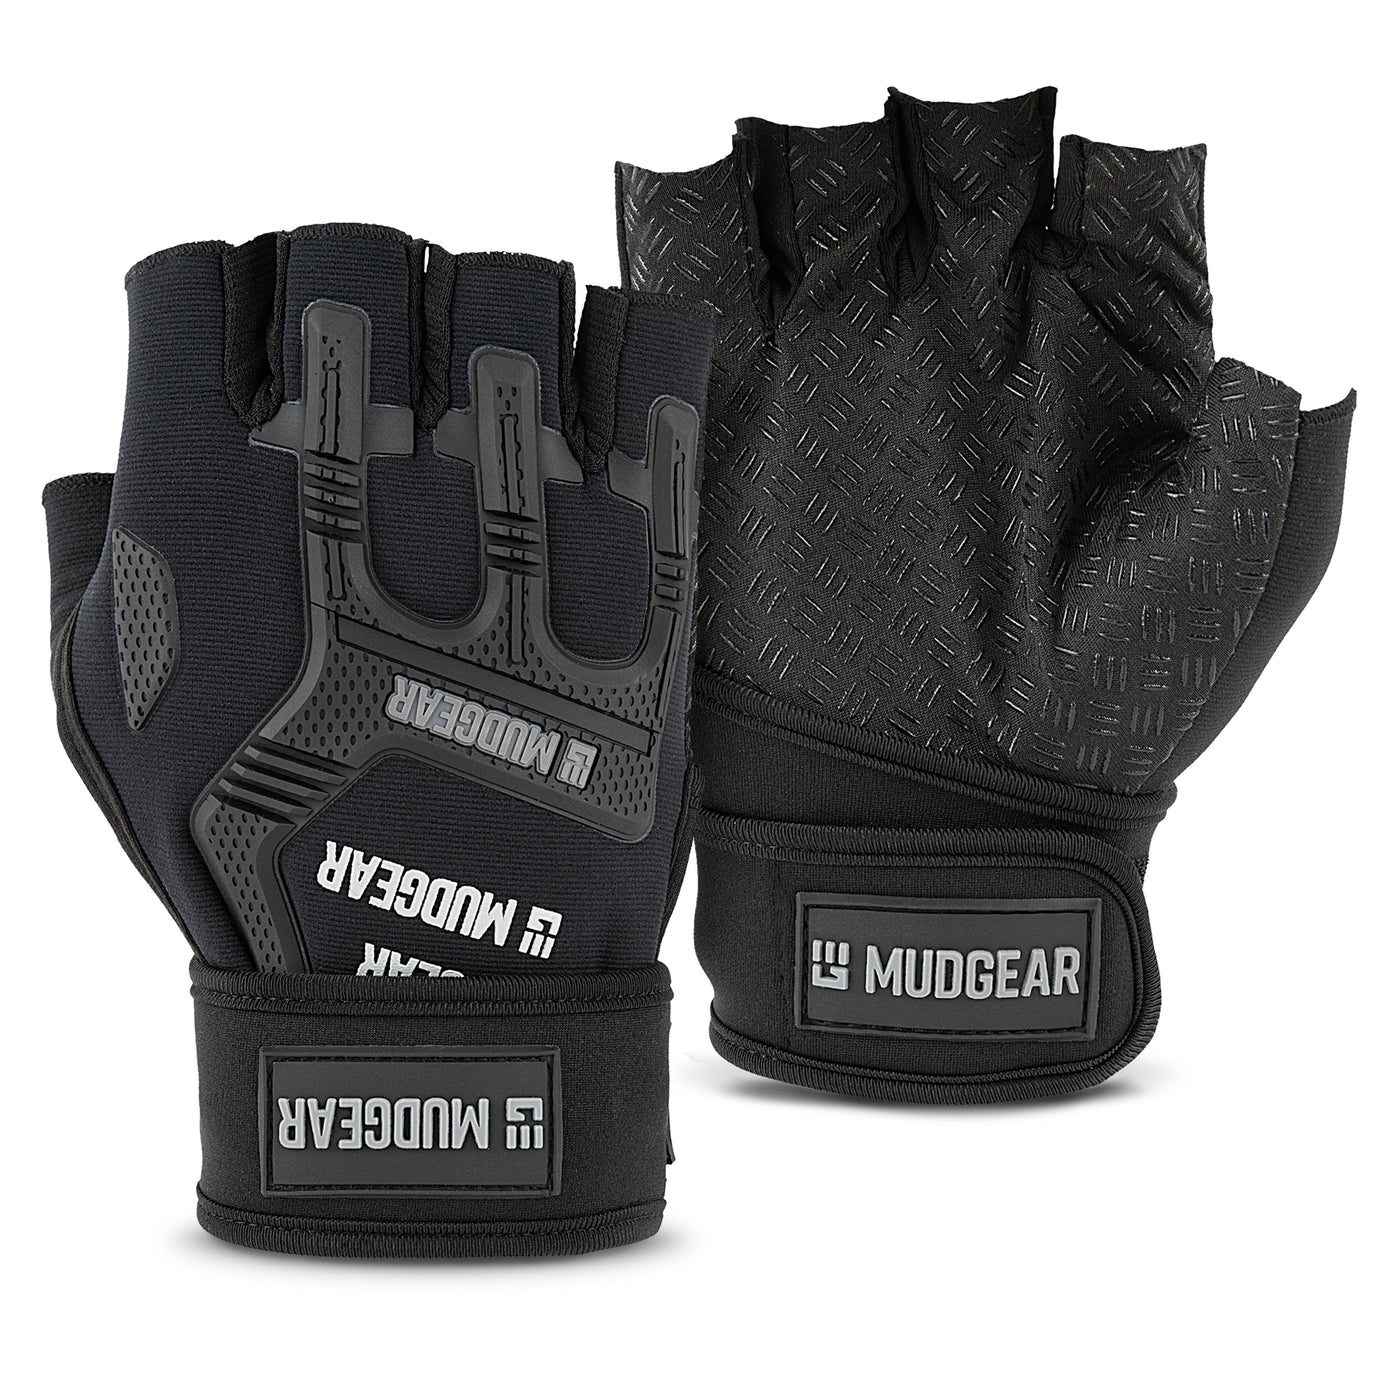 MUDGEAR OCR GLOVES - Durable Performance Glove